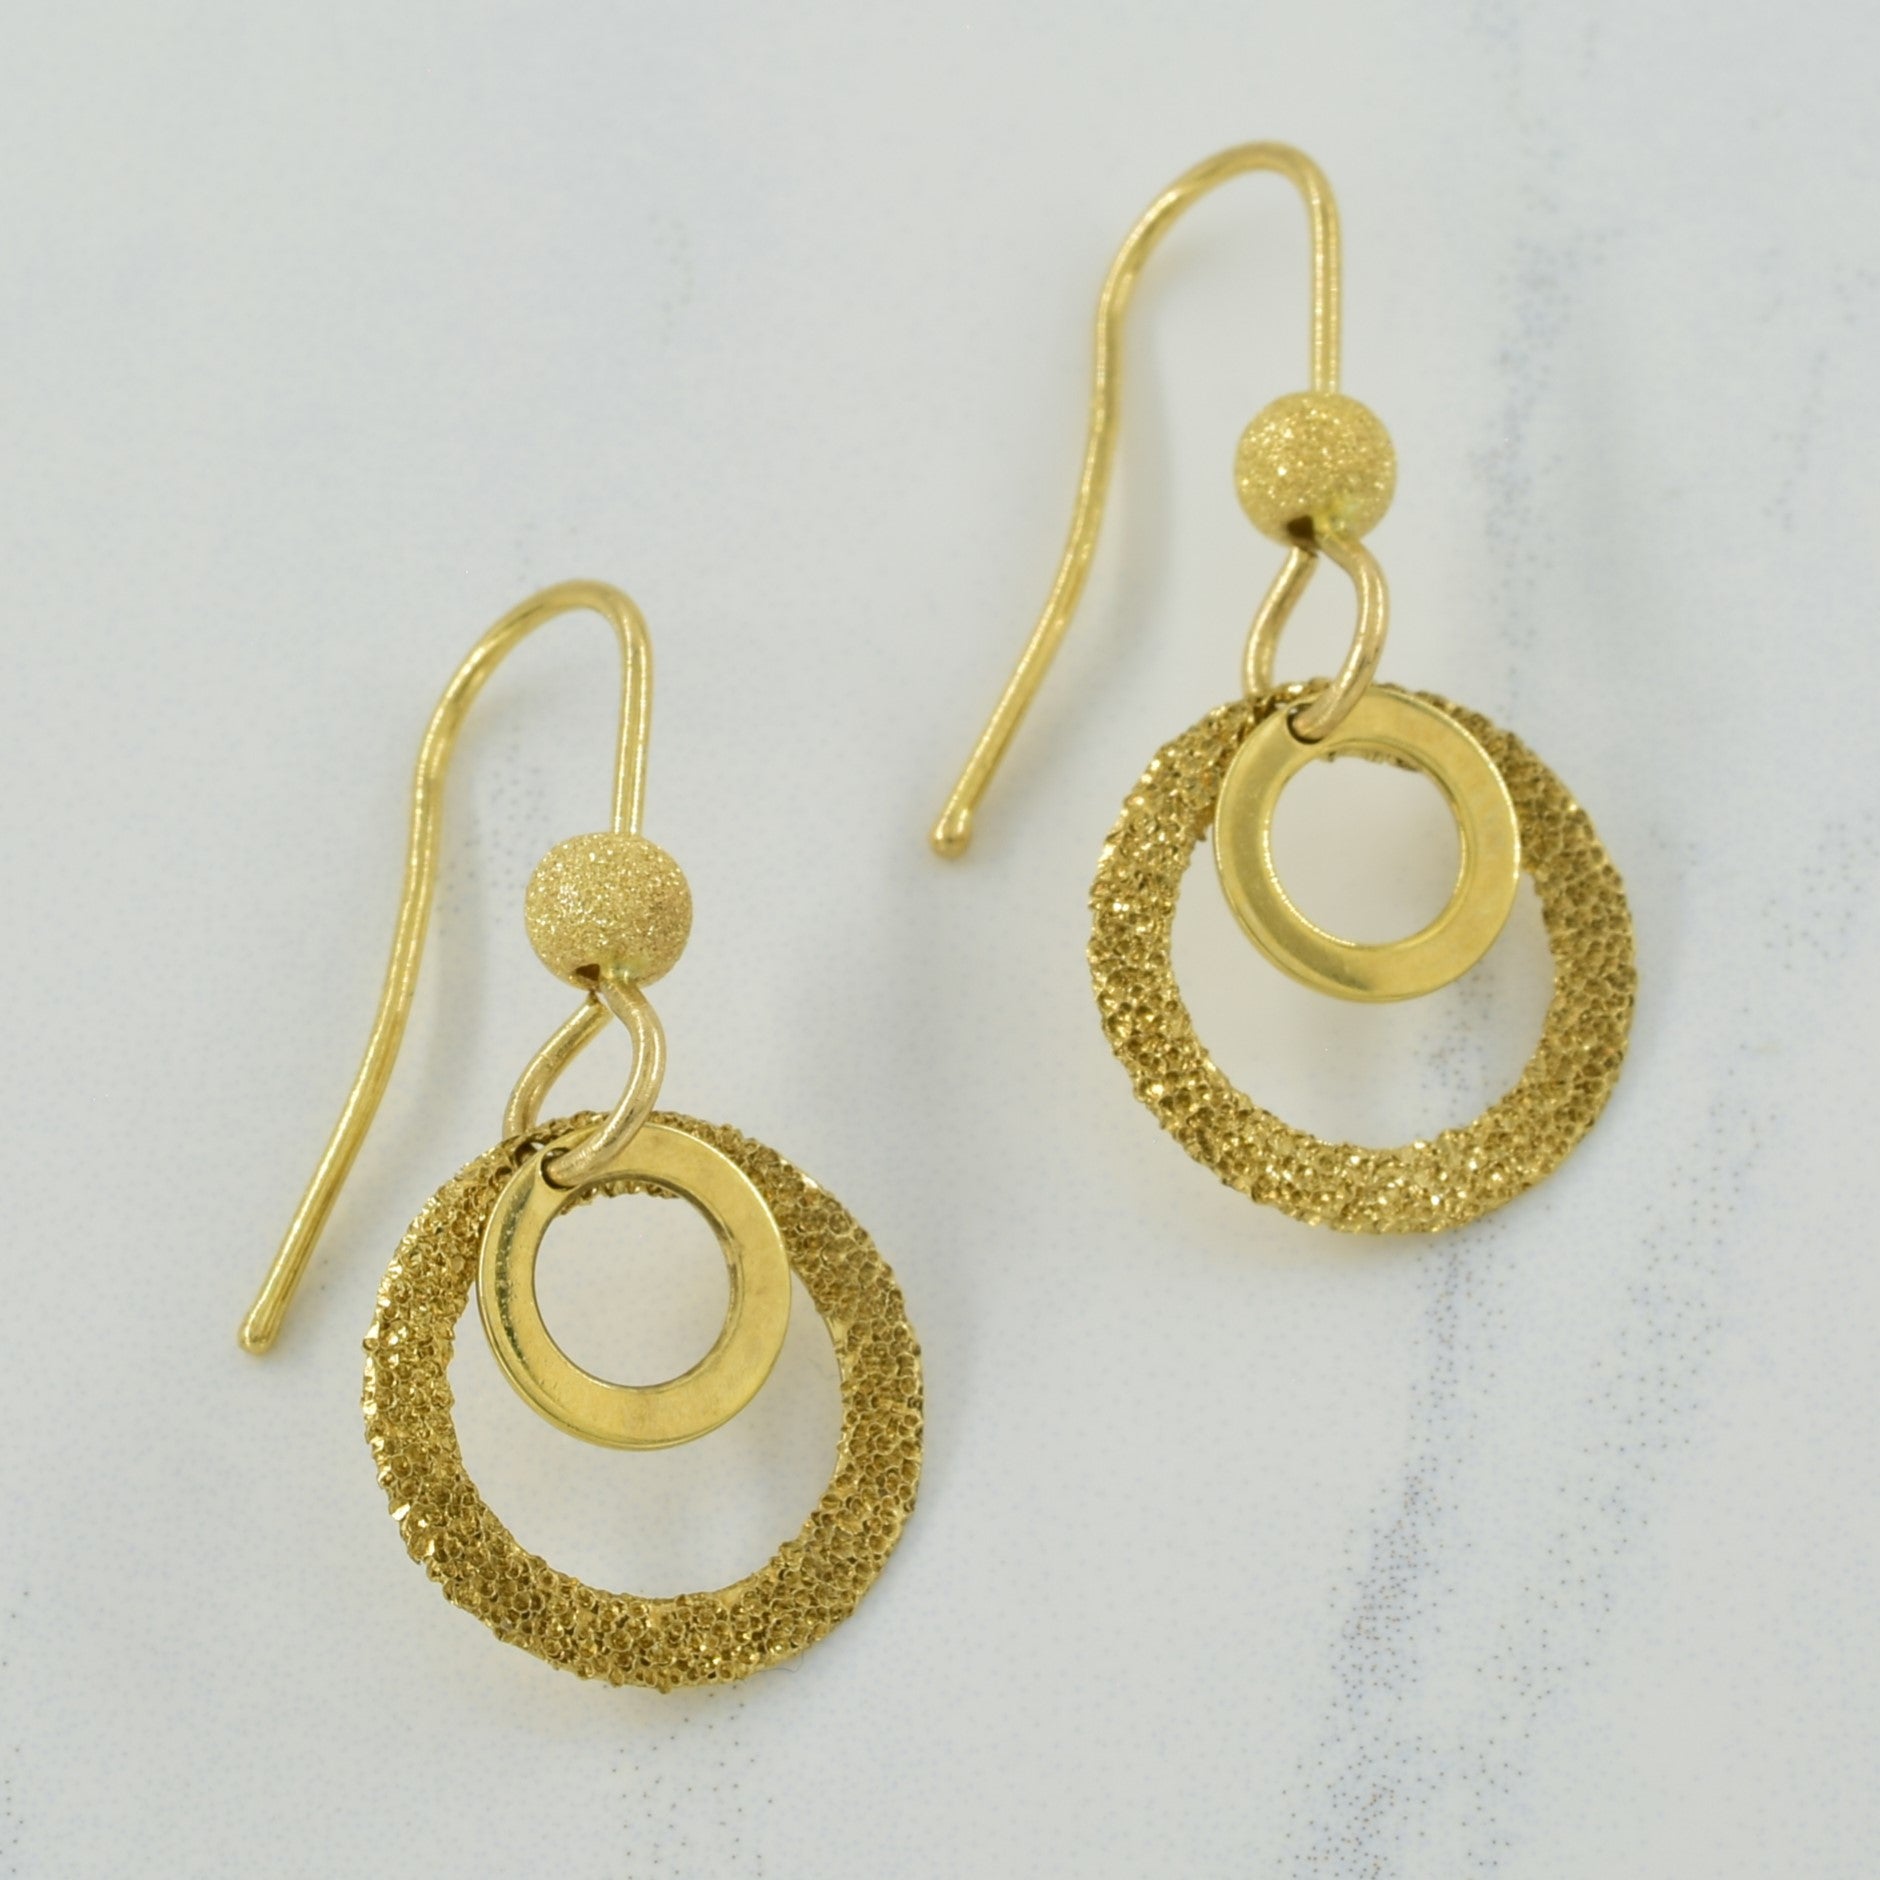 10k Yellow Gold Drop Earrings